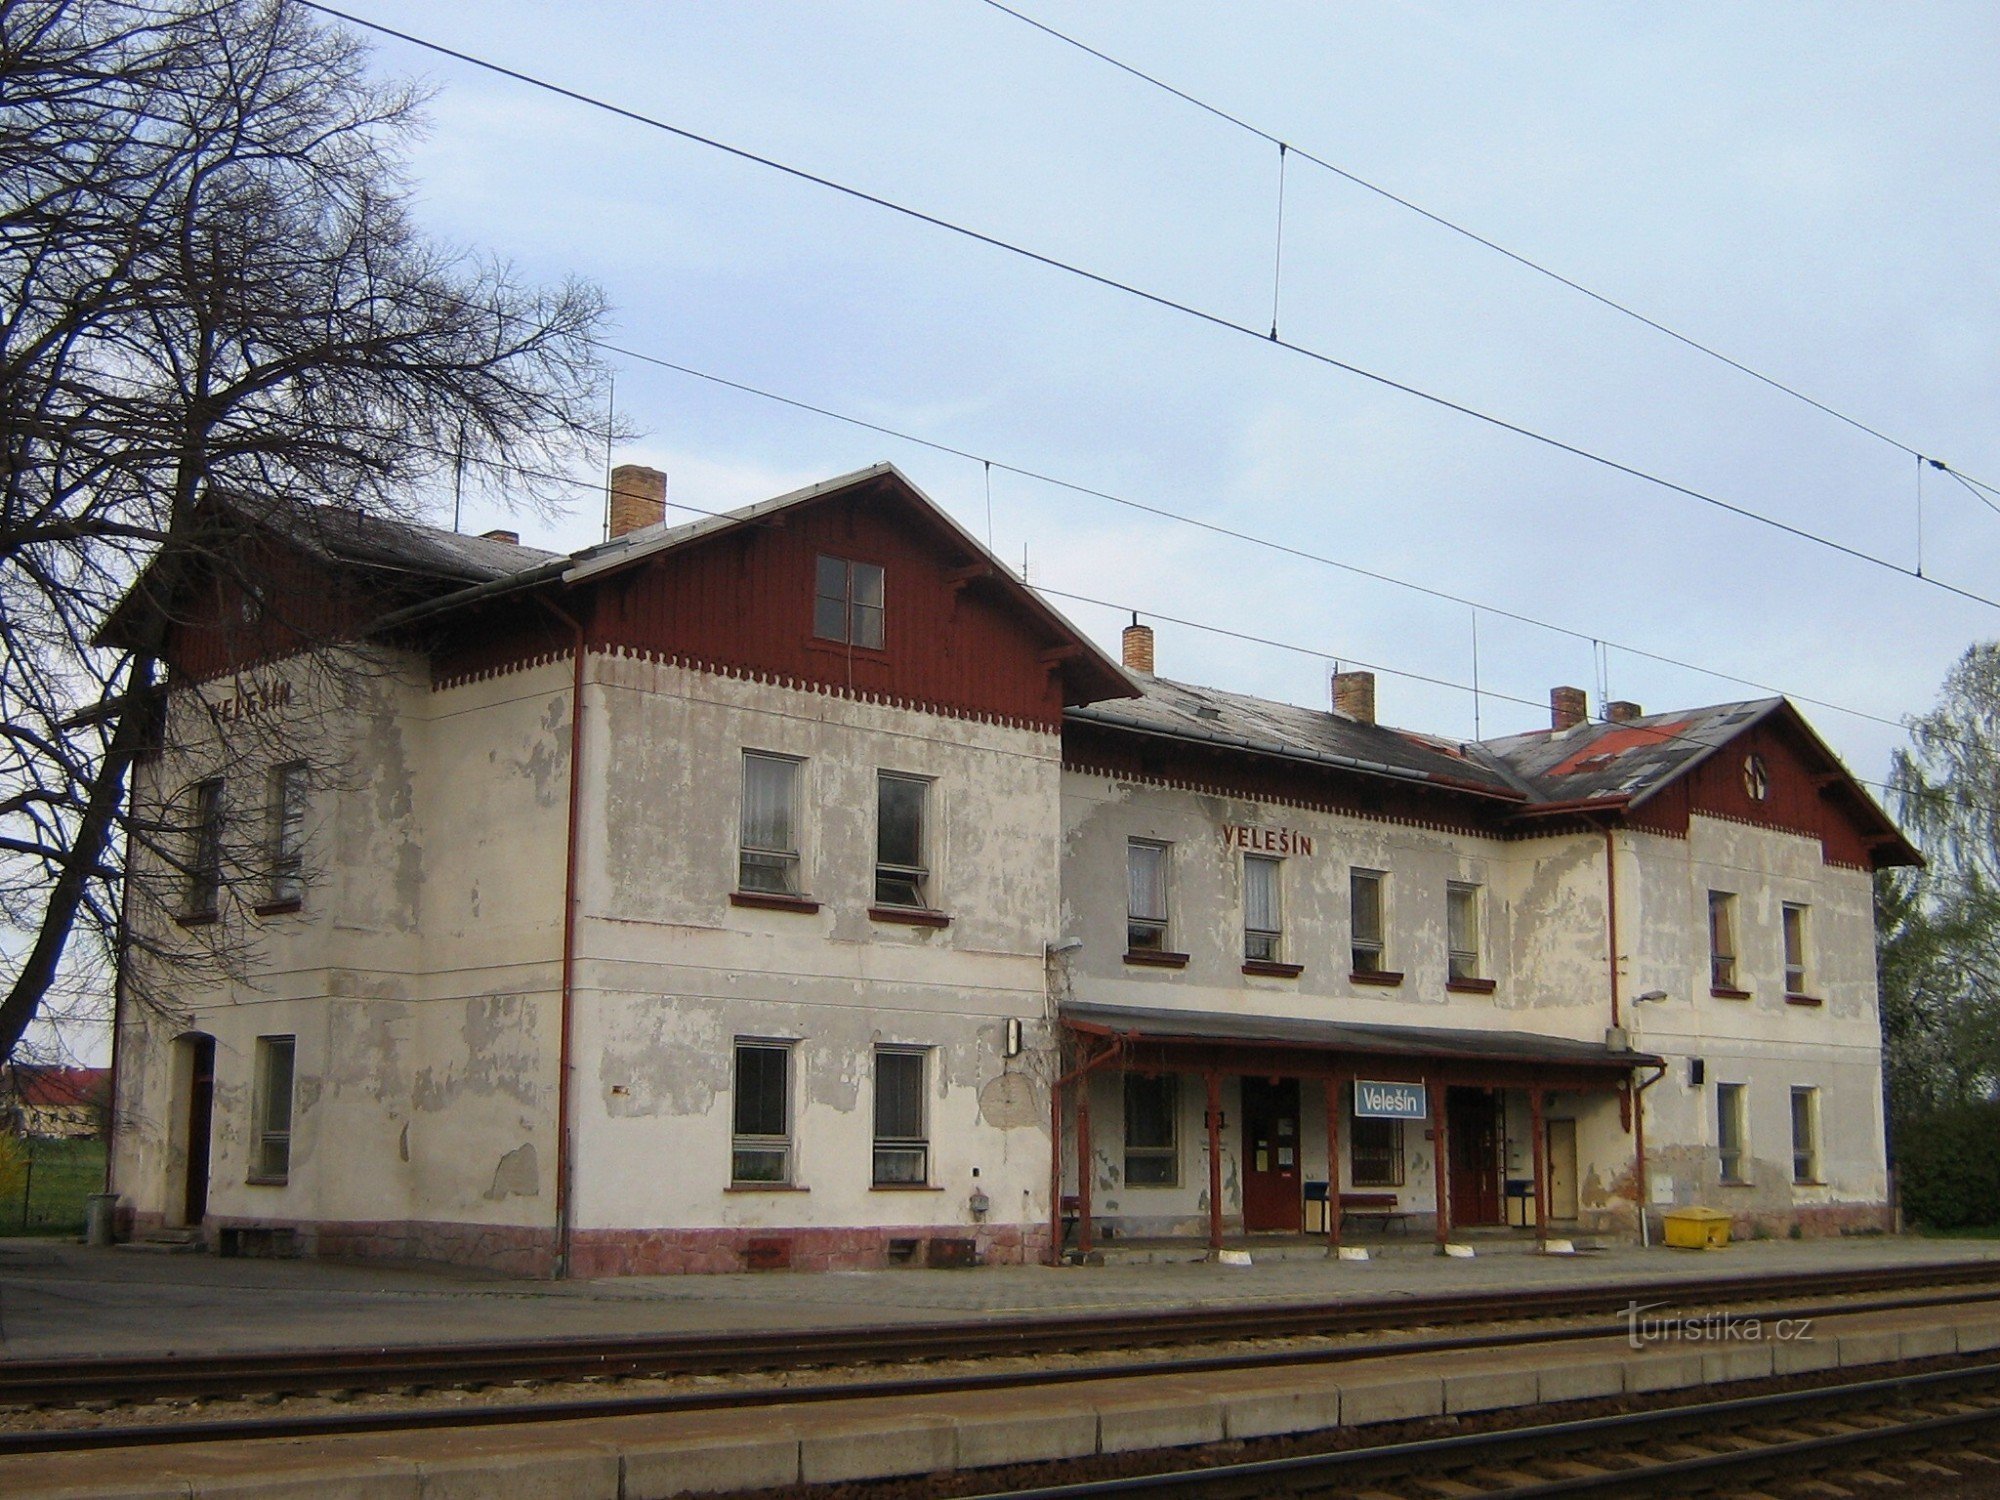 Velesín - estación de tren